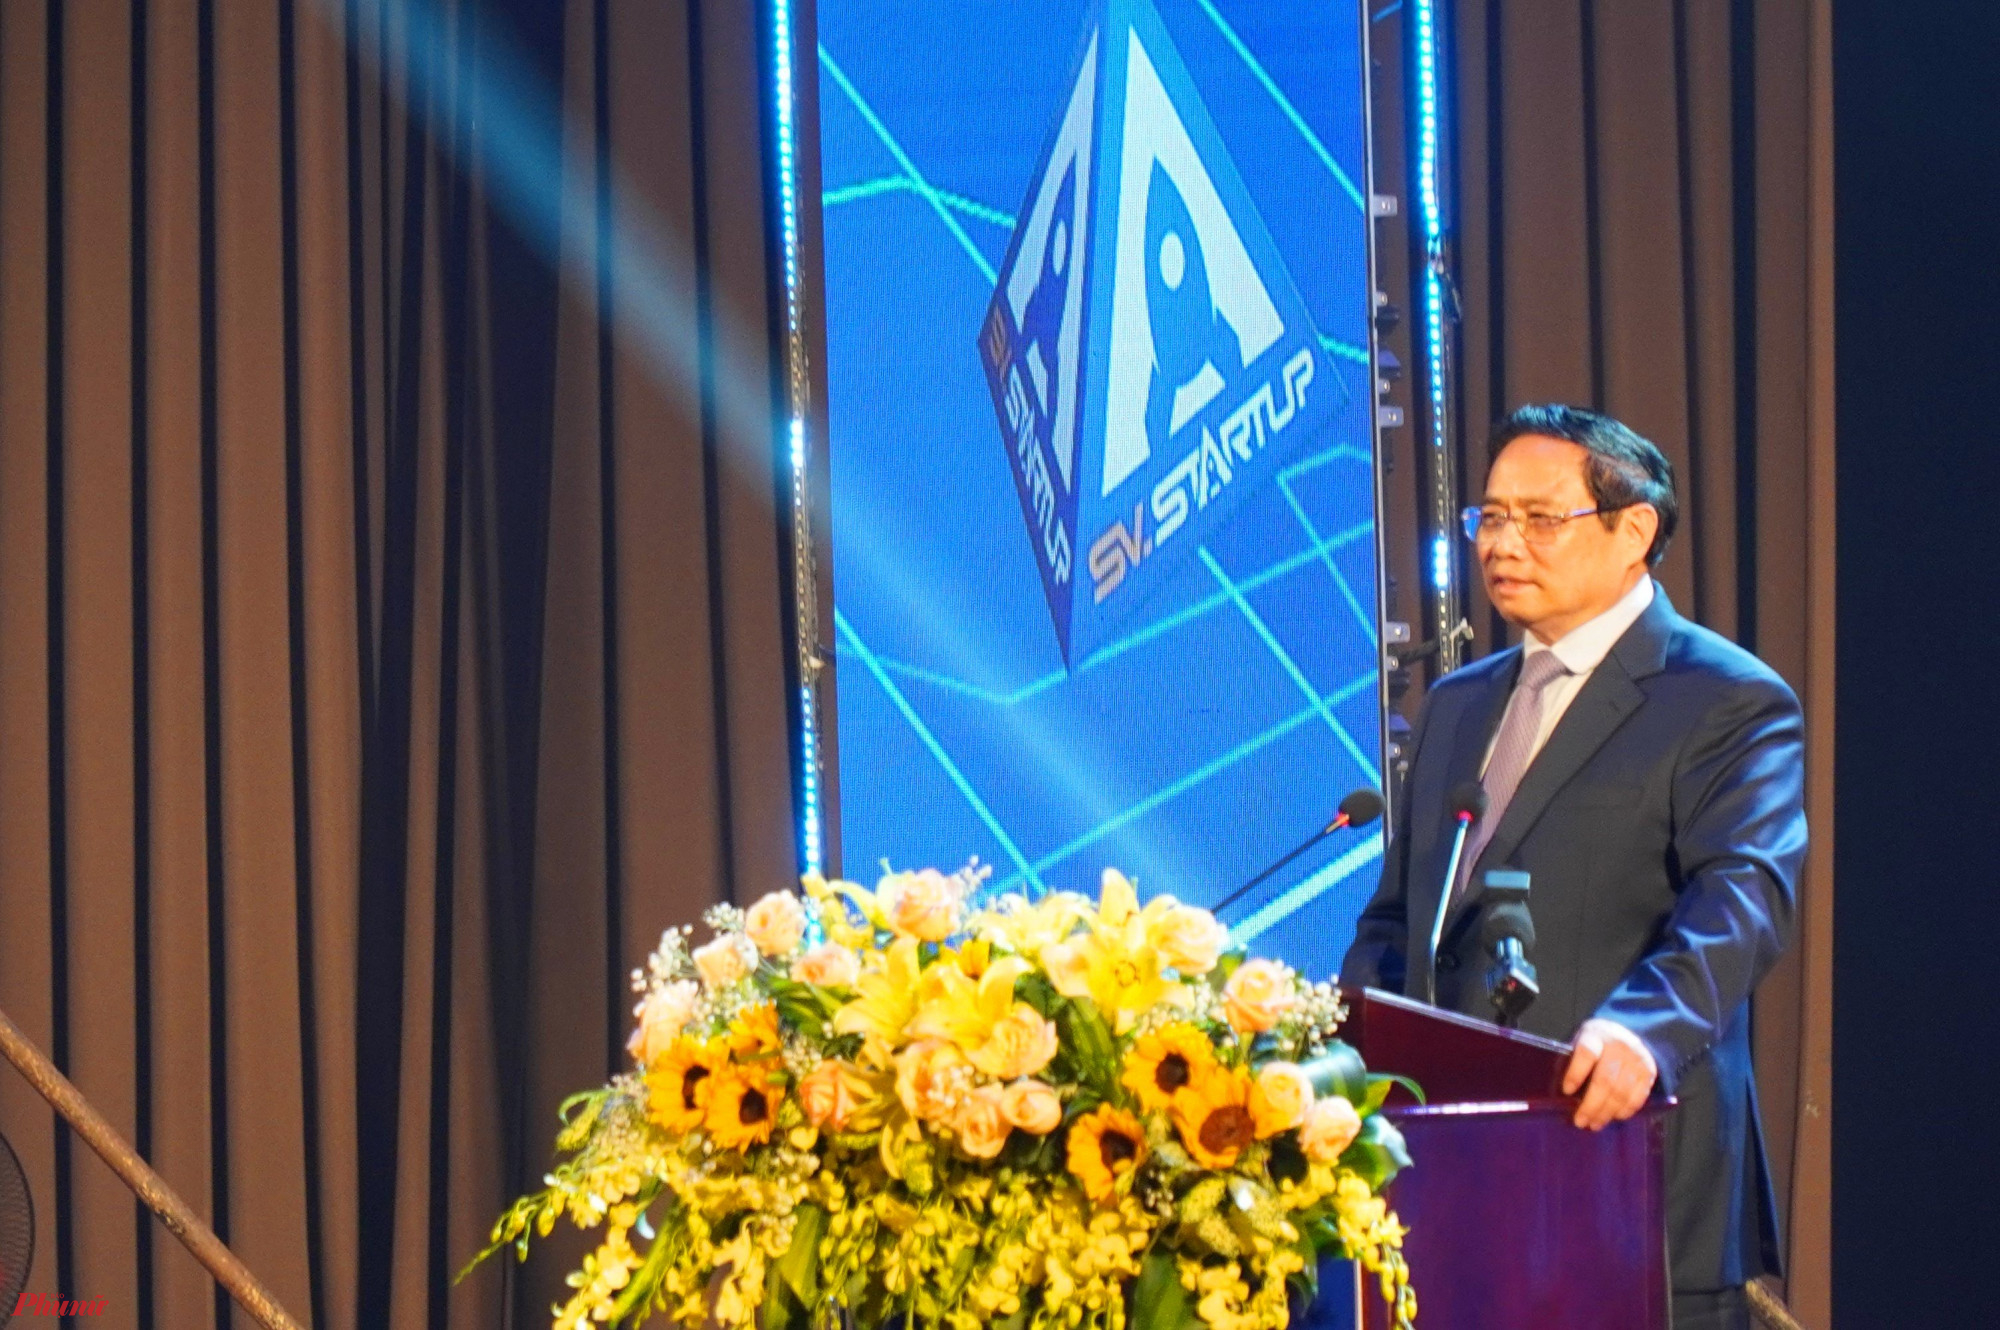 Thủ tướng Phạm Minh Chính Thủ tướng chính phủ: Khởi nghiệp, đổi mới sáng tạo là một động lực, nguồn lực quan trọng trong phát triển của mỗi quốc gia,